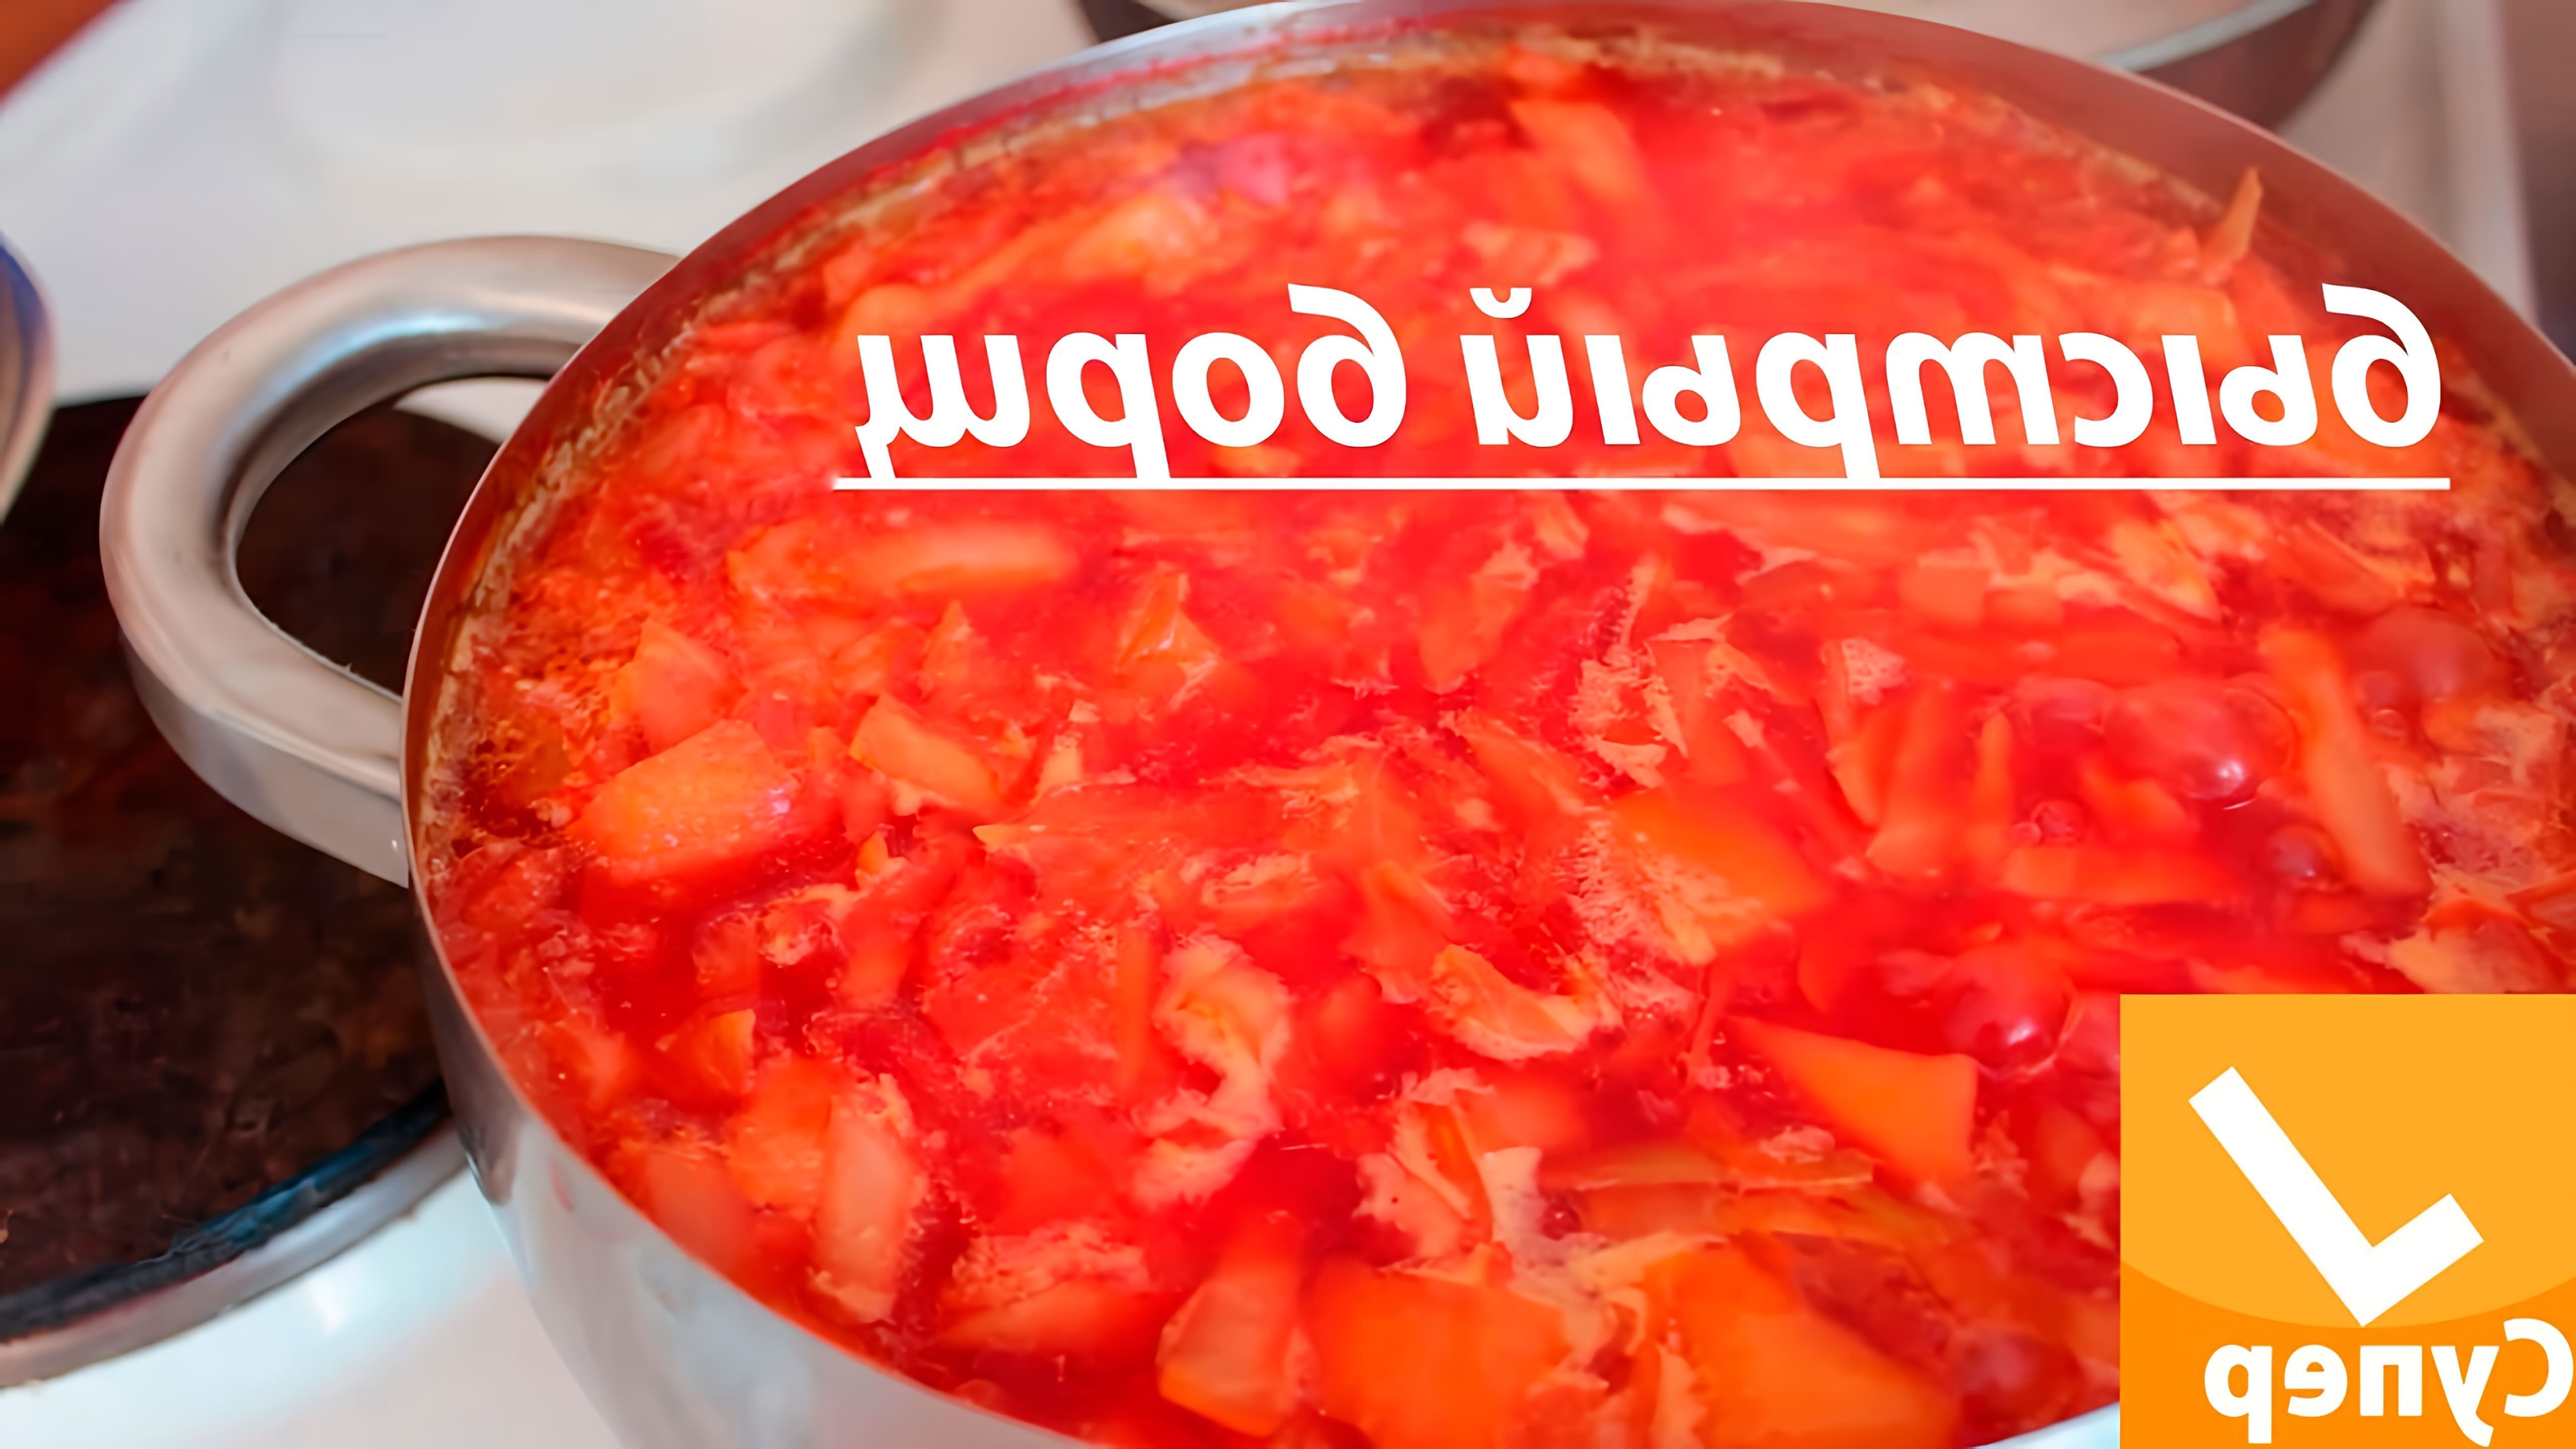 В этом видео демонстрируется пошаговый рецепт приготовления вкусного борща за 30 минут